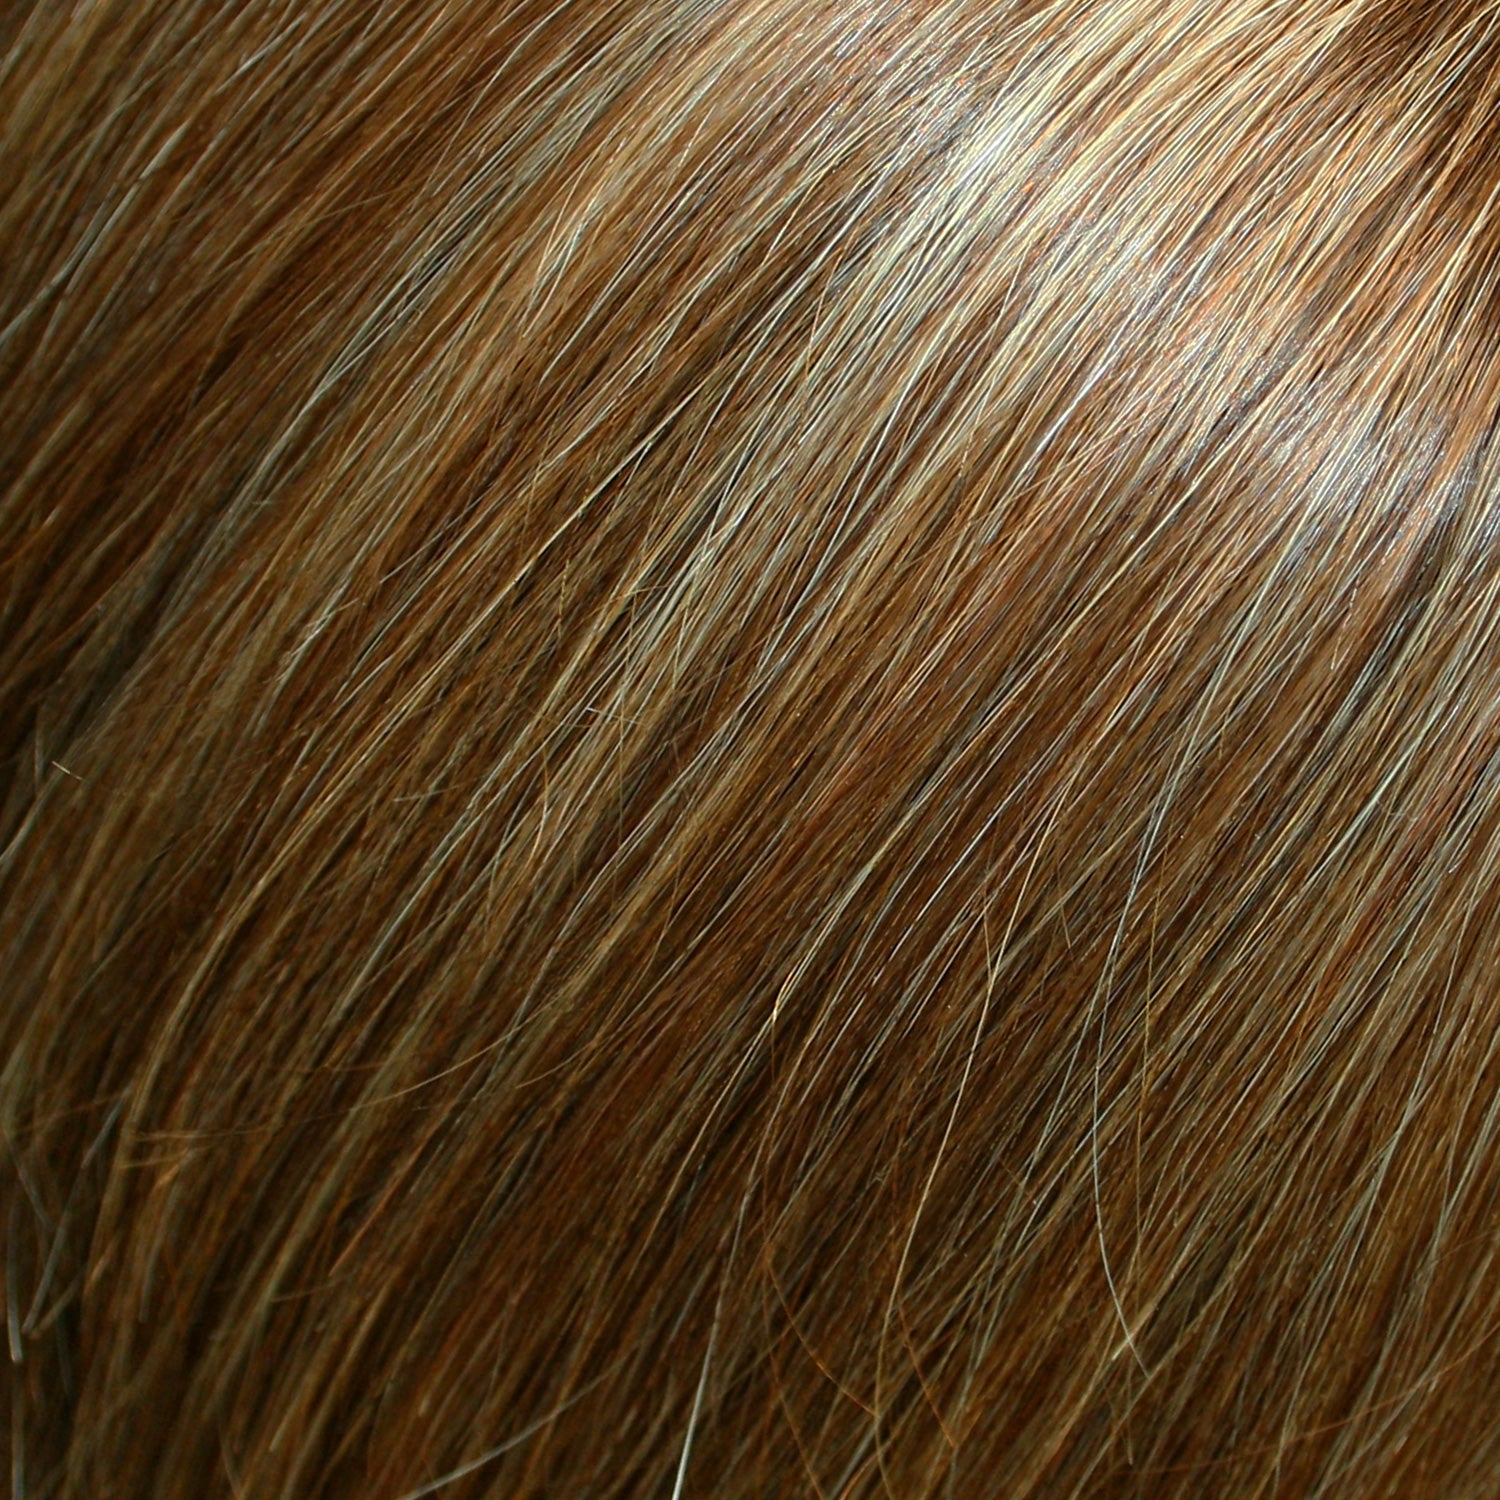 Perruque Cheveux Humains Naturels Avec Mèches Jon Renau Lea Couleur Chocolat fs26-31s6